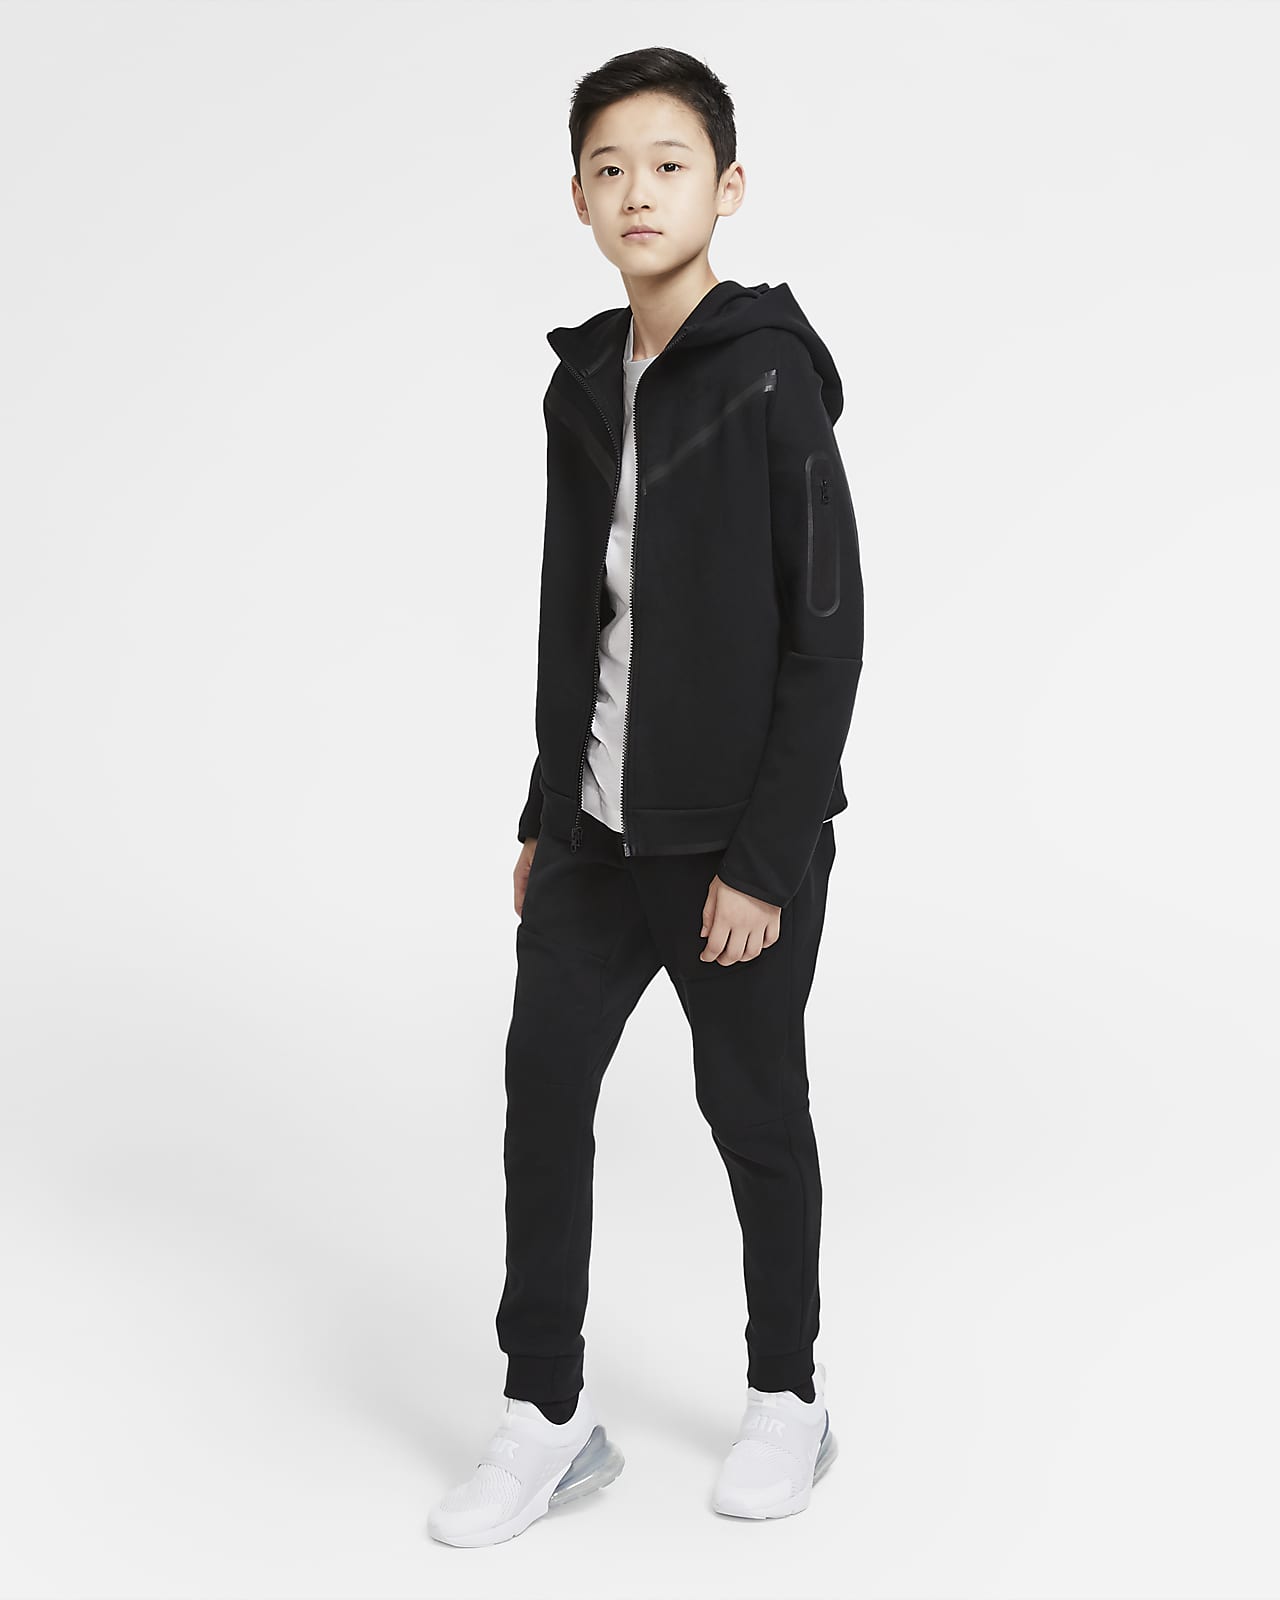 Nike Sportswear Junior Boys' Tech Fleece Pants Black / Black